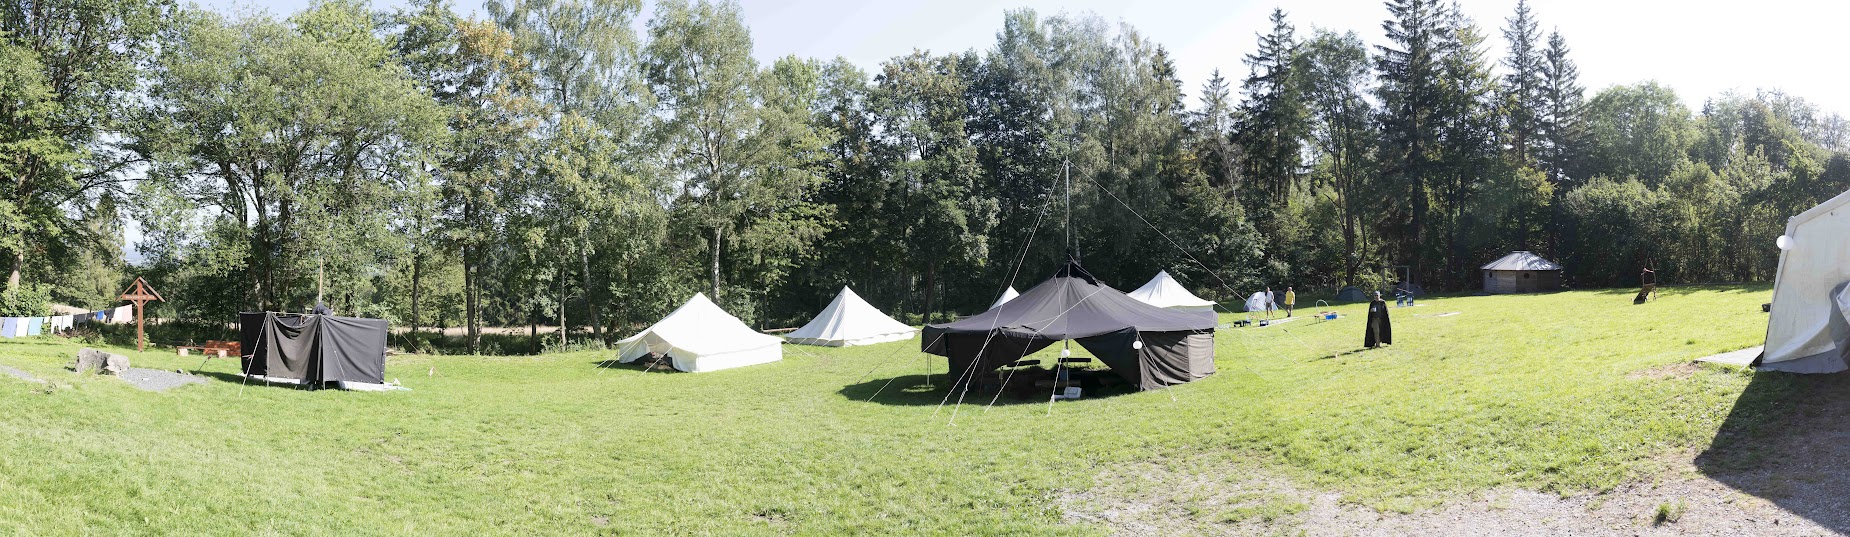 MHN-Camp